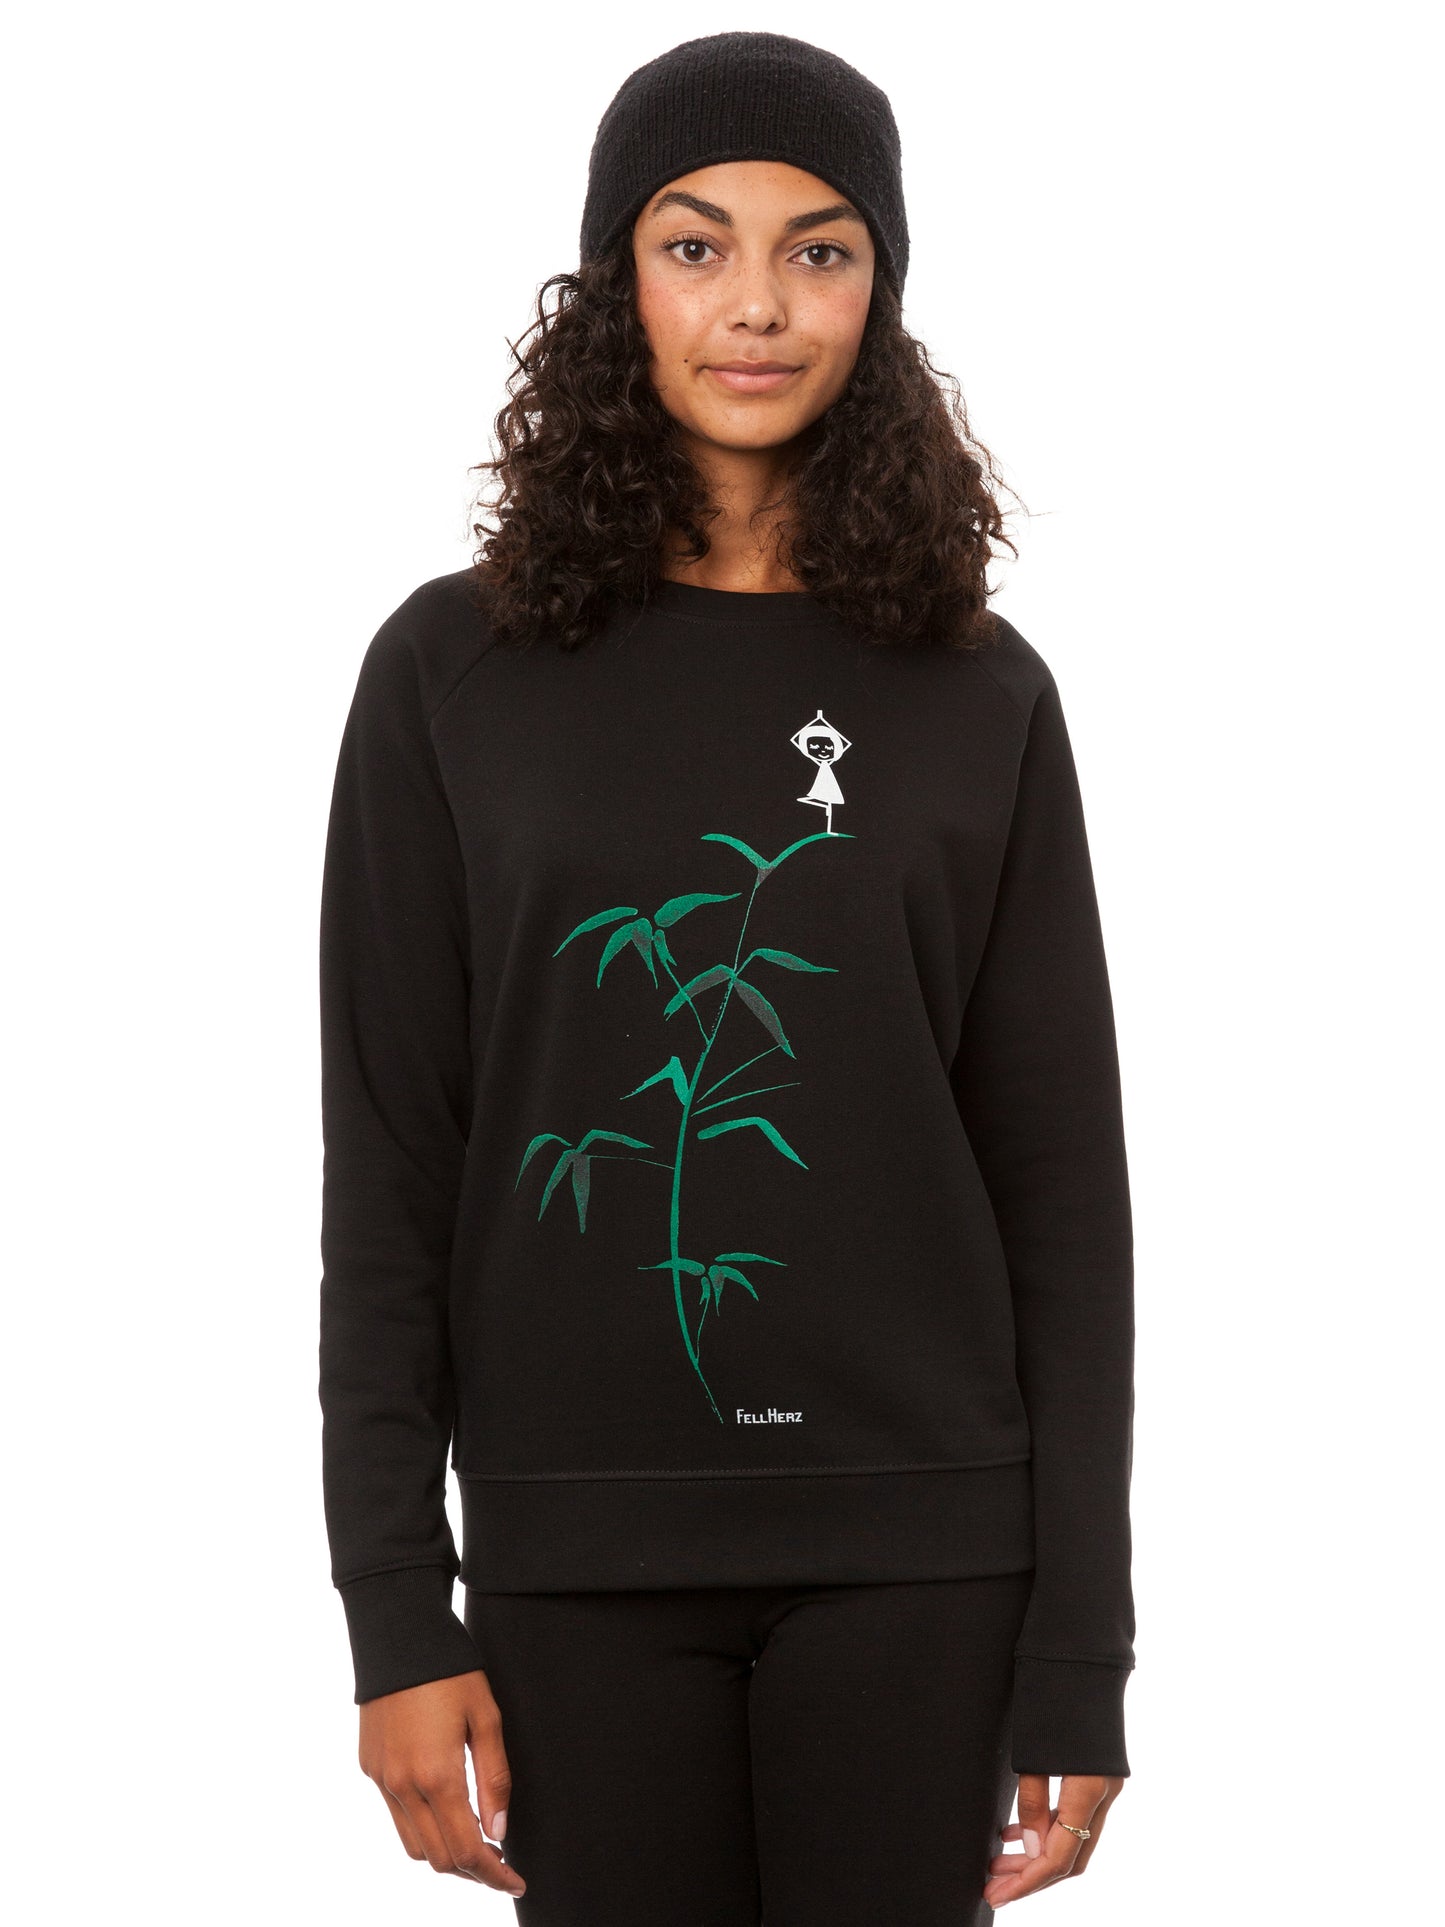 Yoga girl sweater black XS 